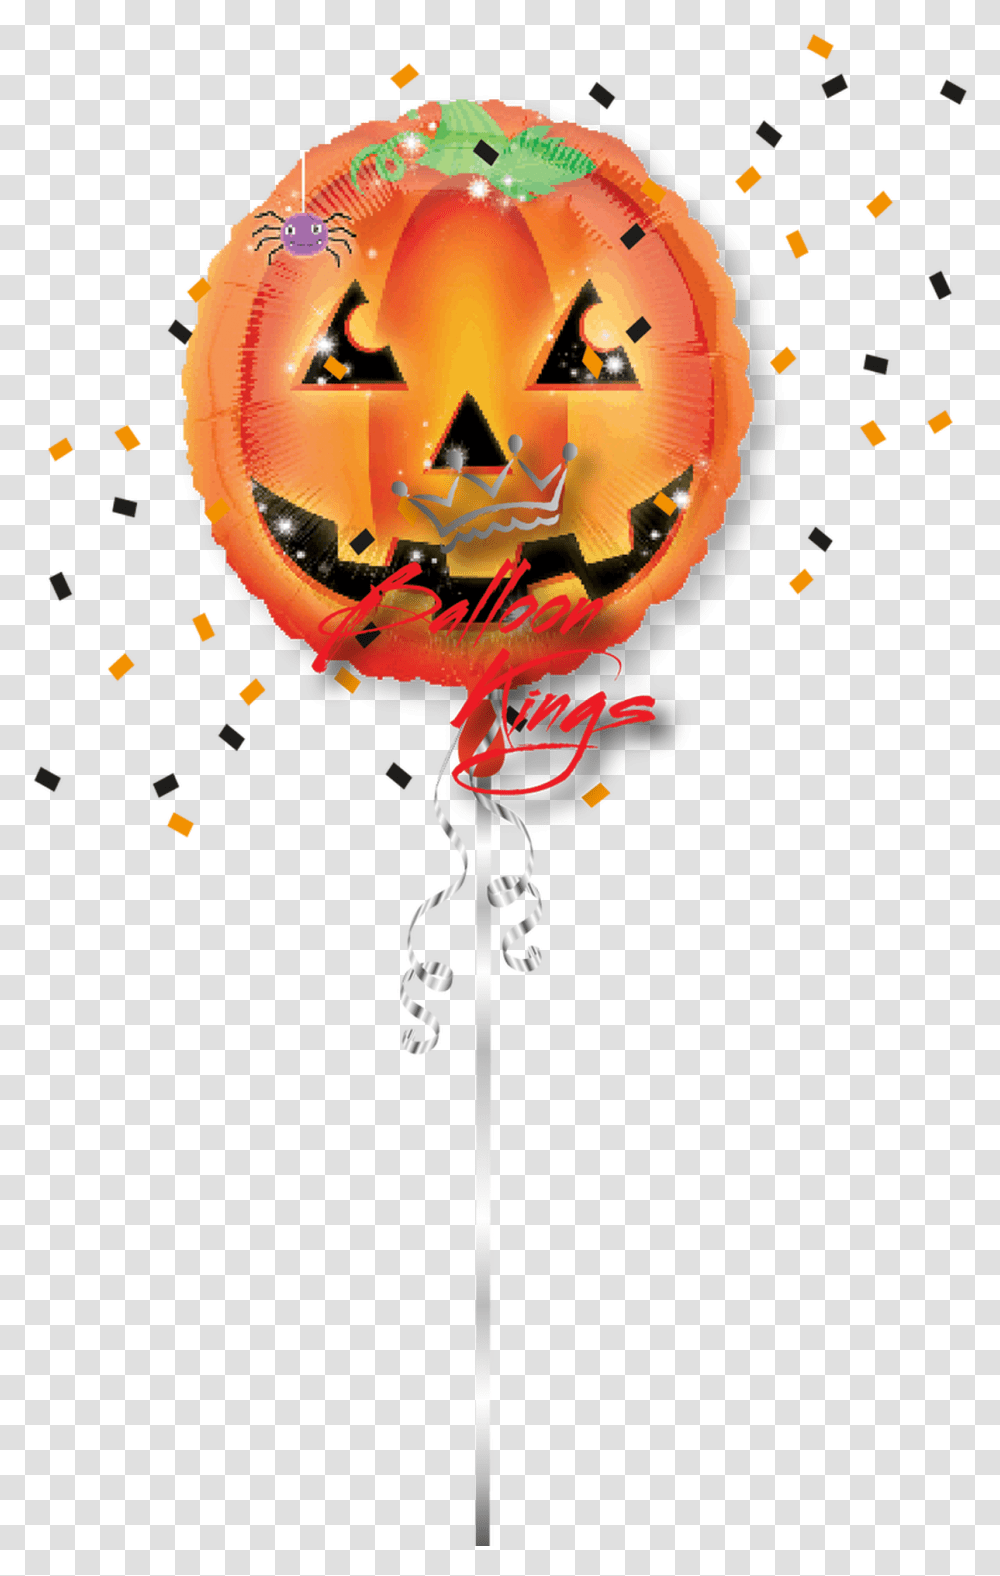 Pumpkin Playful Balloon Pumpkin, Cross, Paper, Halloween Transparent Png